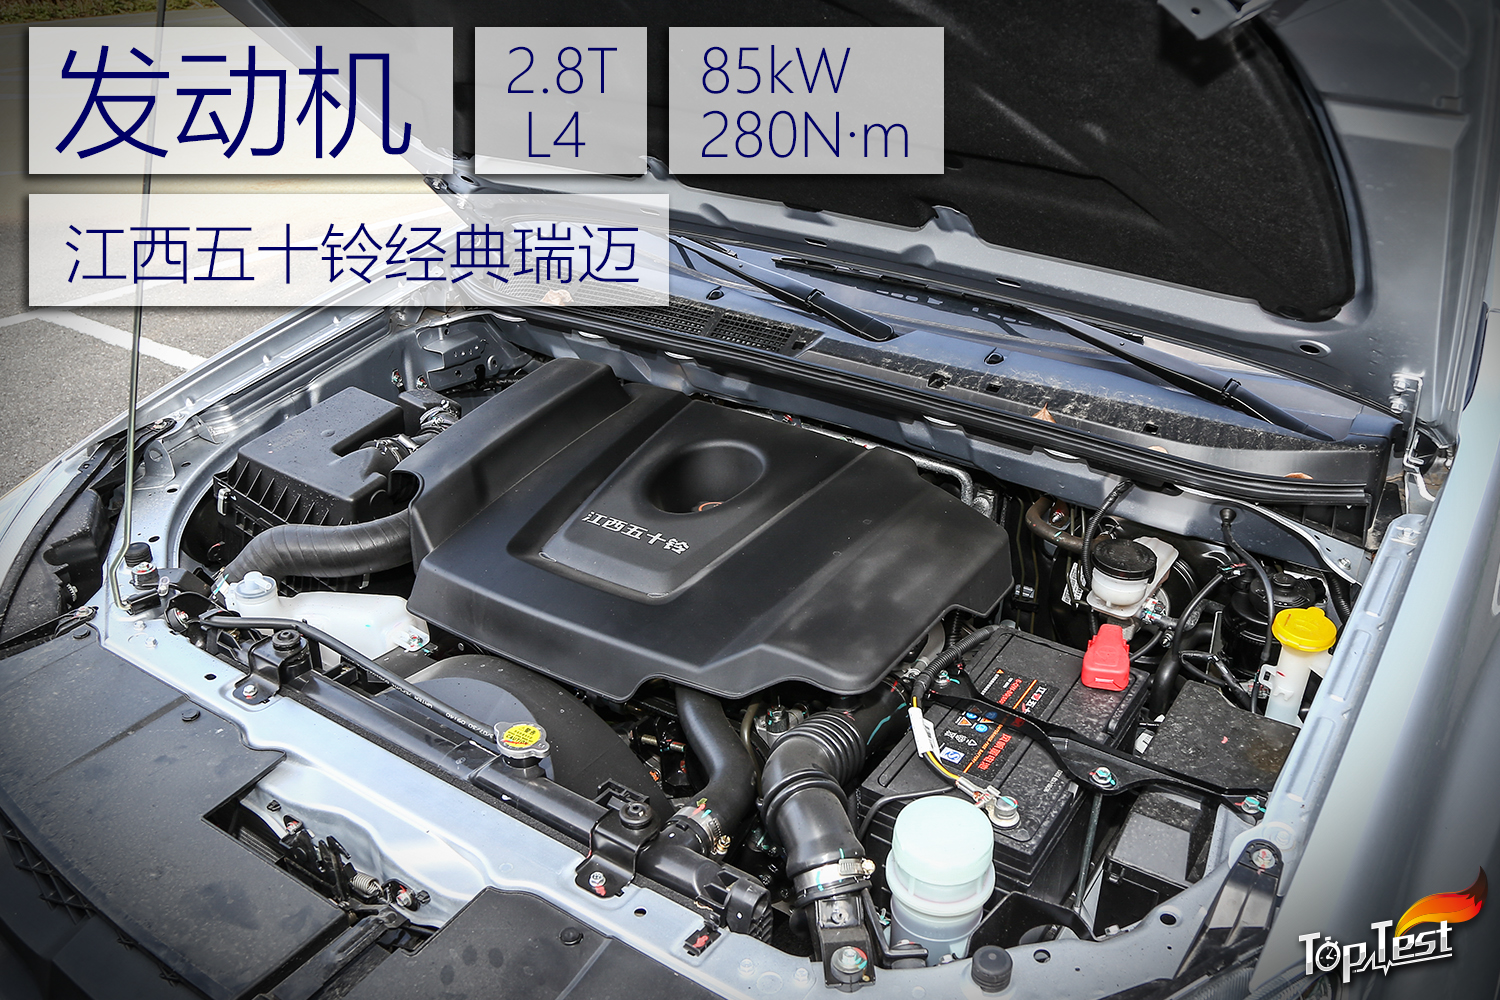 8t柴油发动机,该发动机符合国v排放标准,最大功率为85kw,峰值扭矩280n